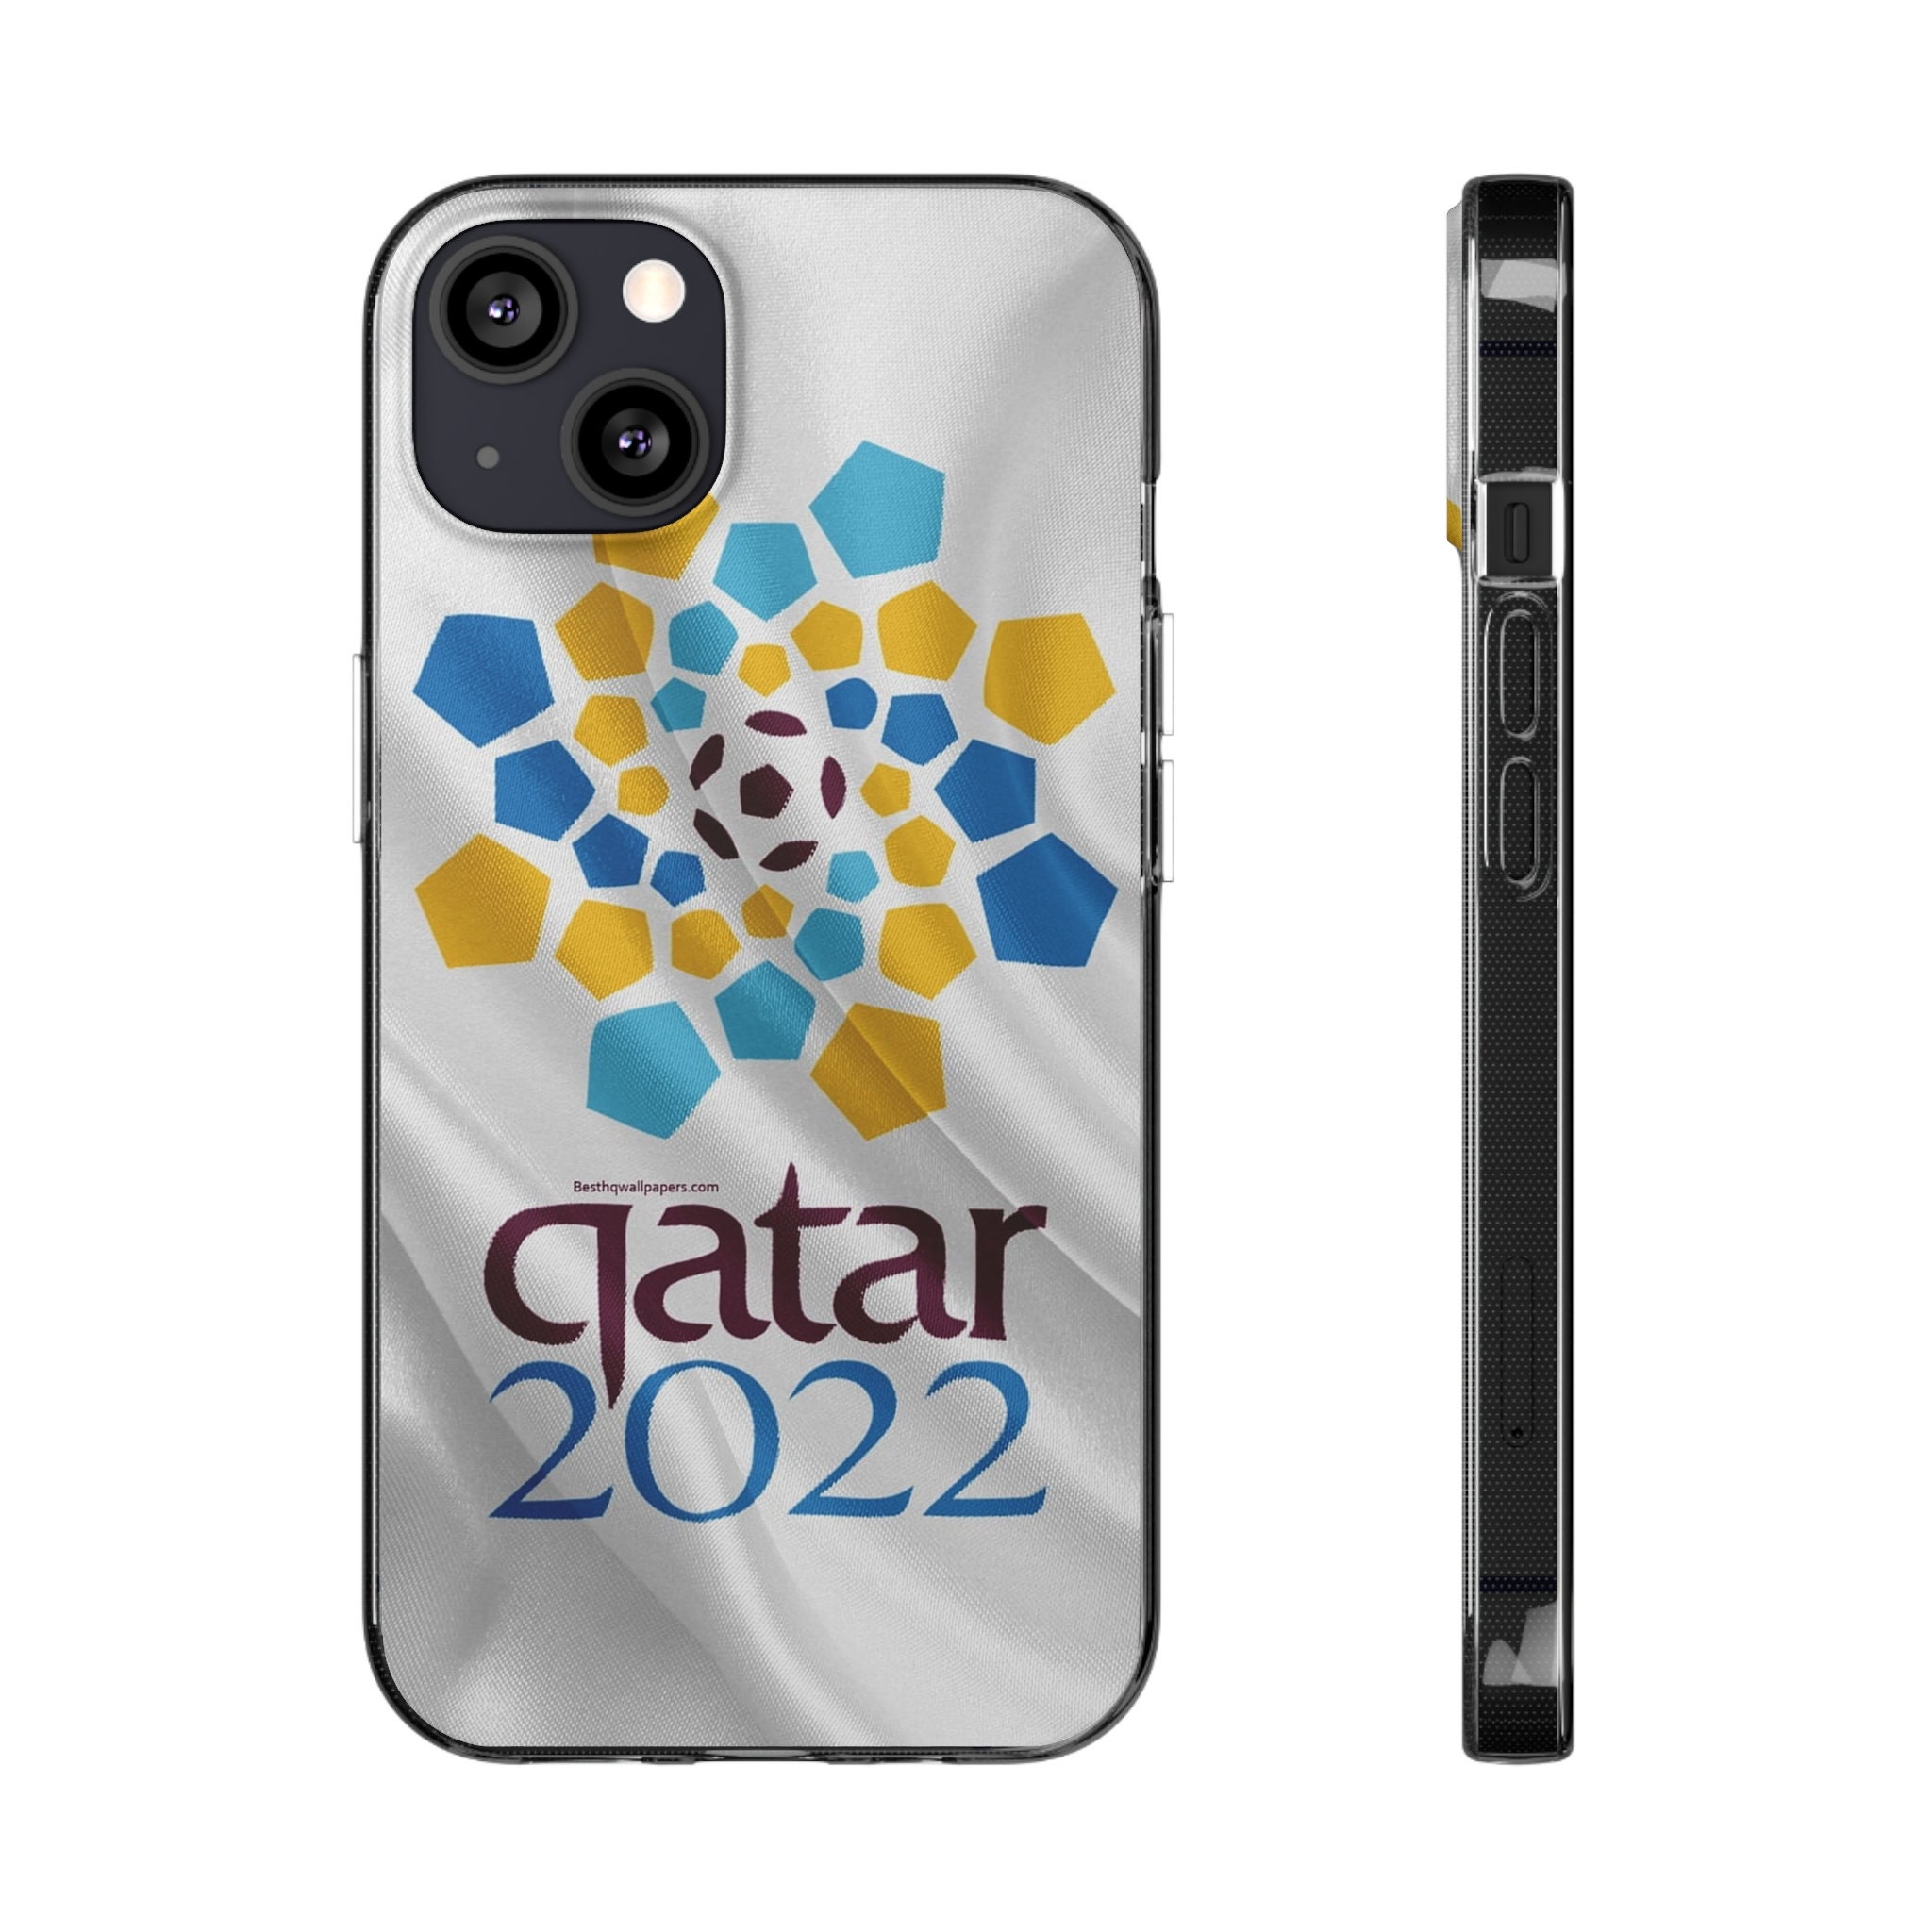 Quatar 2022 FIFA World Cup Phone Case 